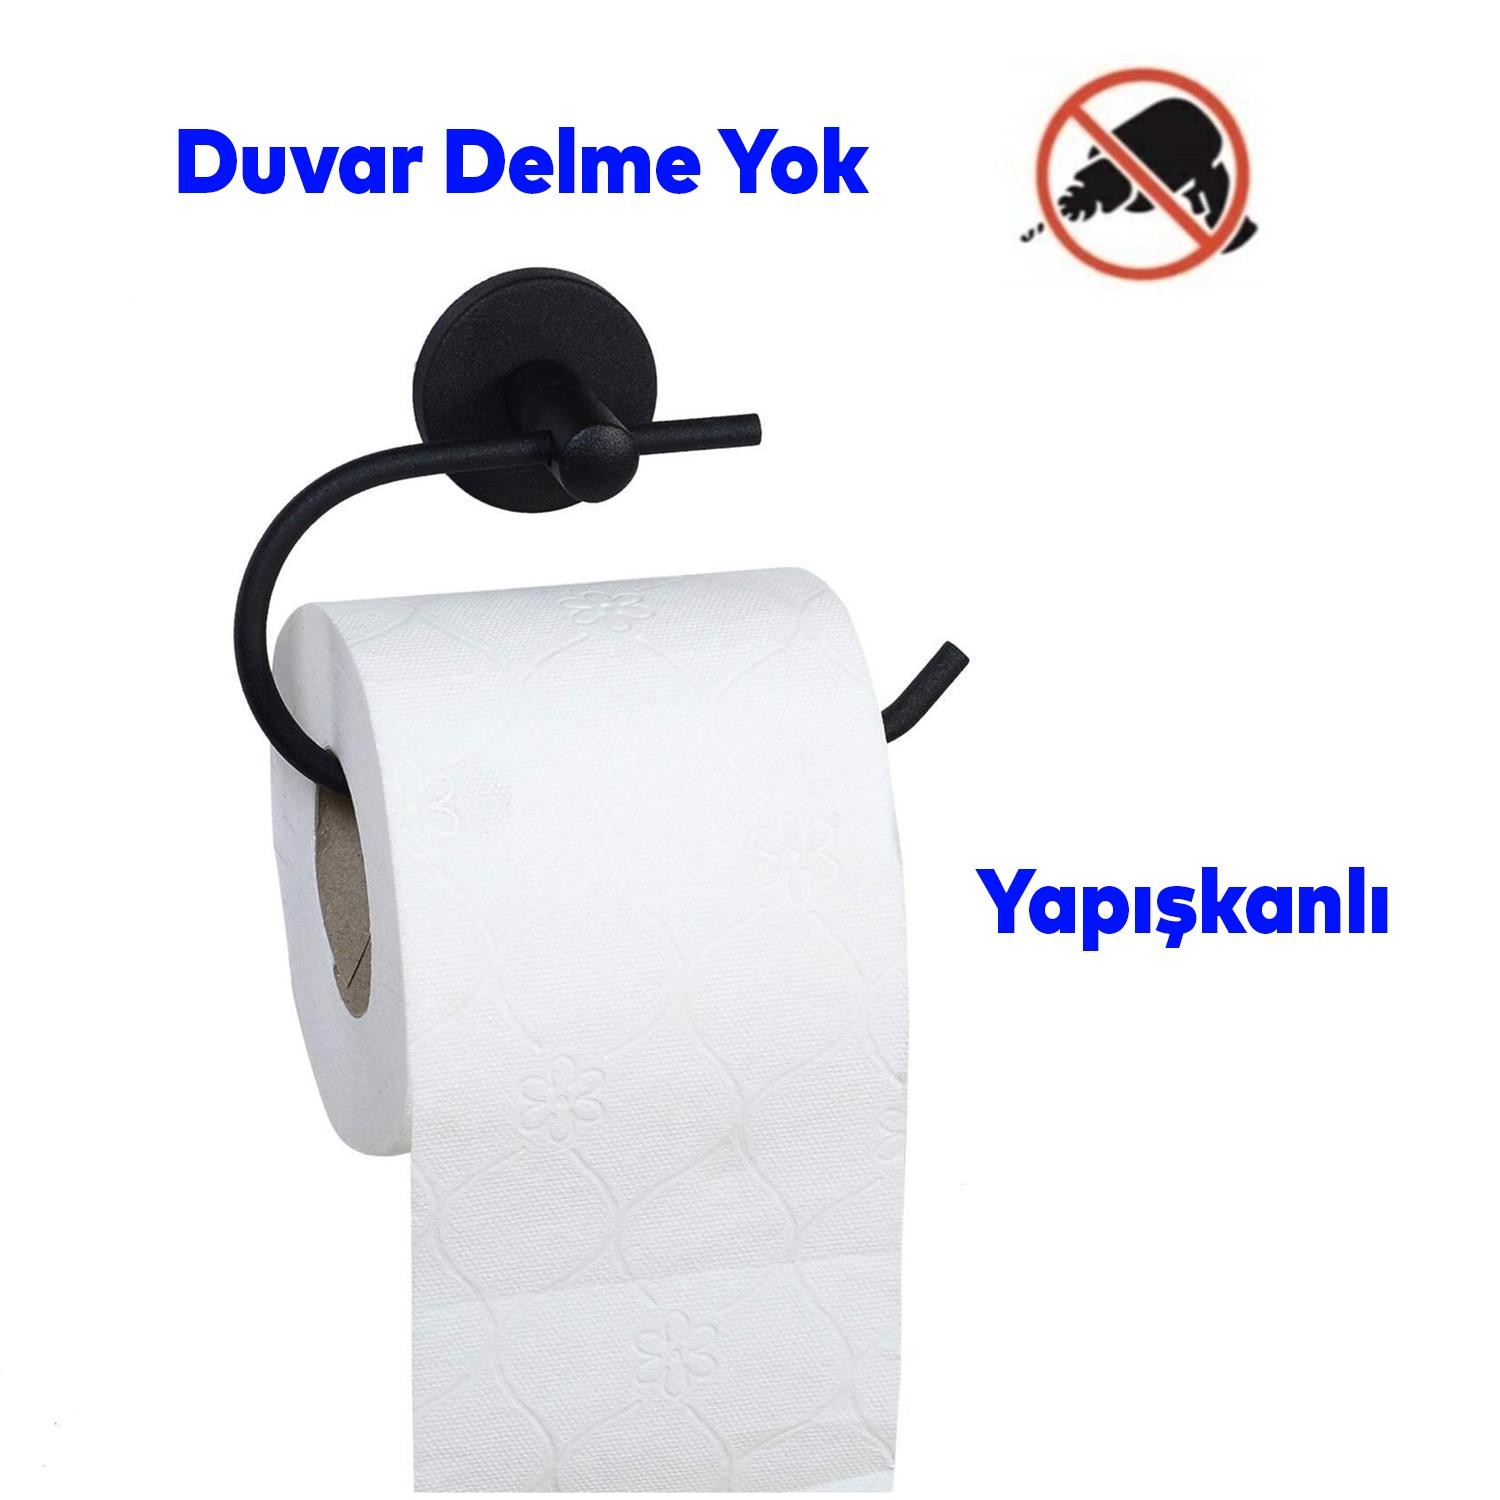 Yapışkanlı Tuvalet Kağıtlık Aparat Açık WC Kağıt Standı Bez Havluluk Paslanmaz Metal Sağlam Siyah Renk